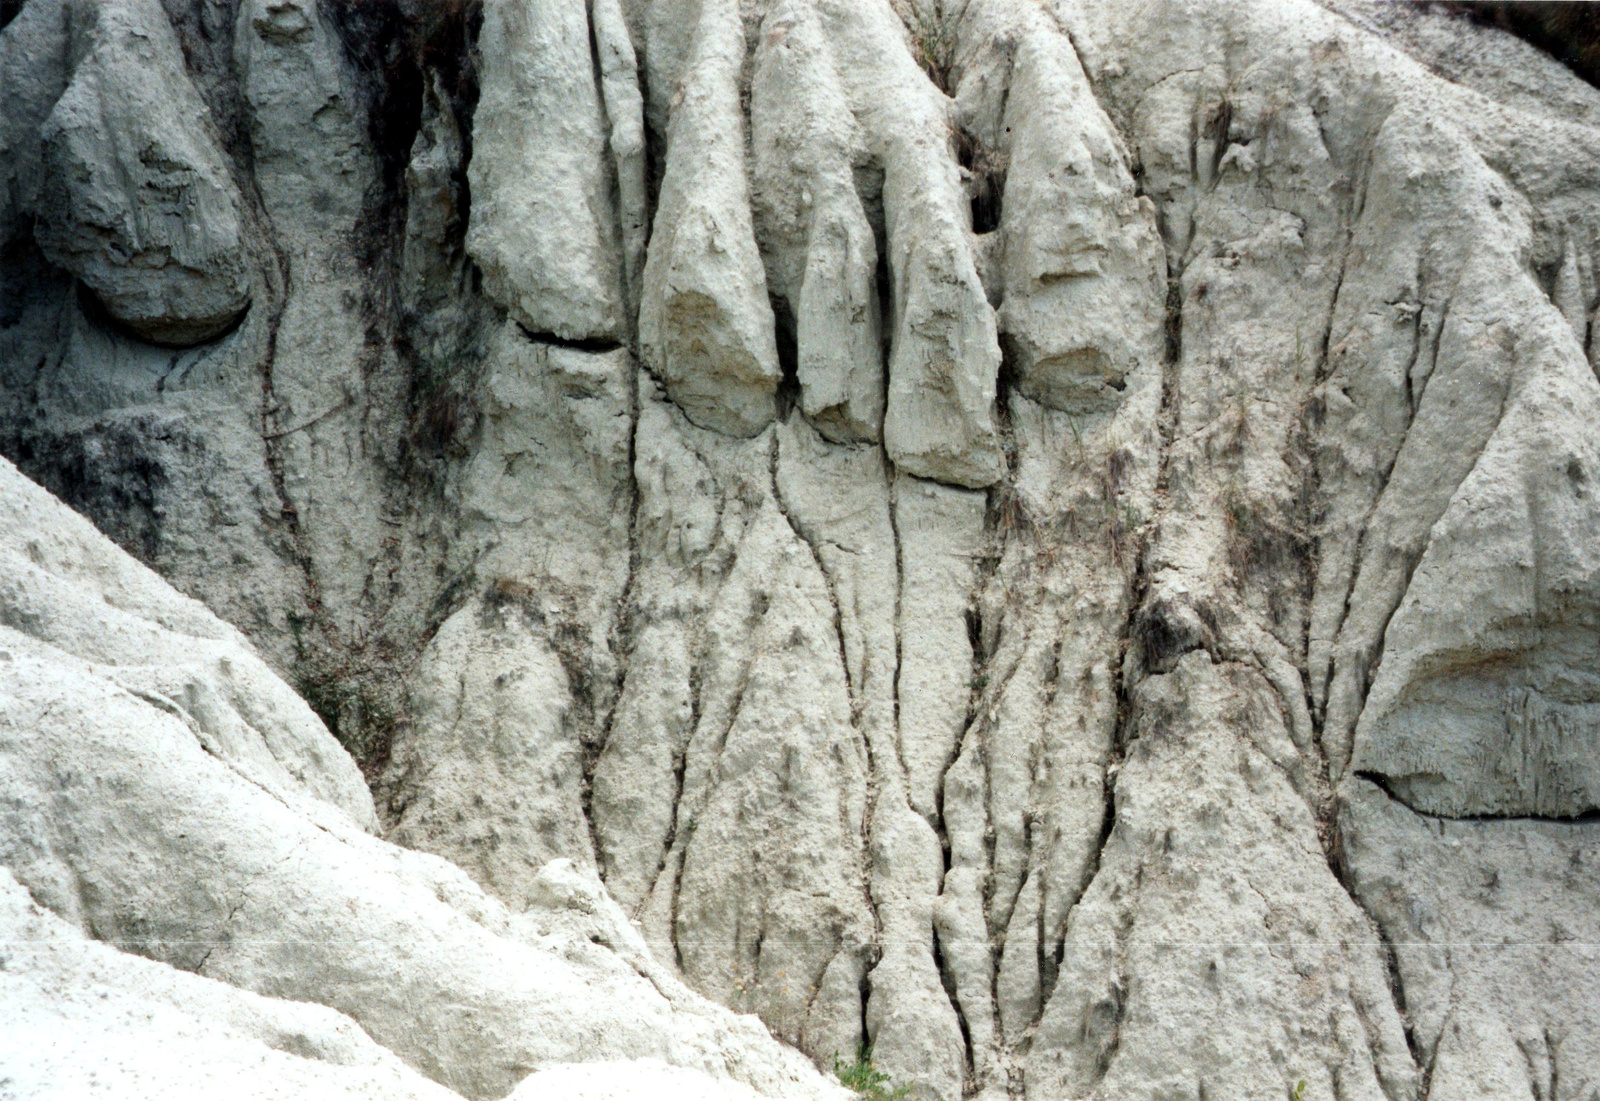 s047-Kazár-Riolit-tufa erozió